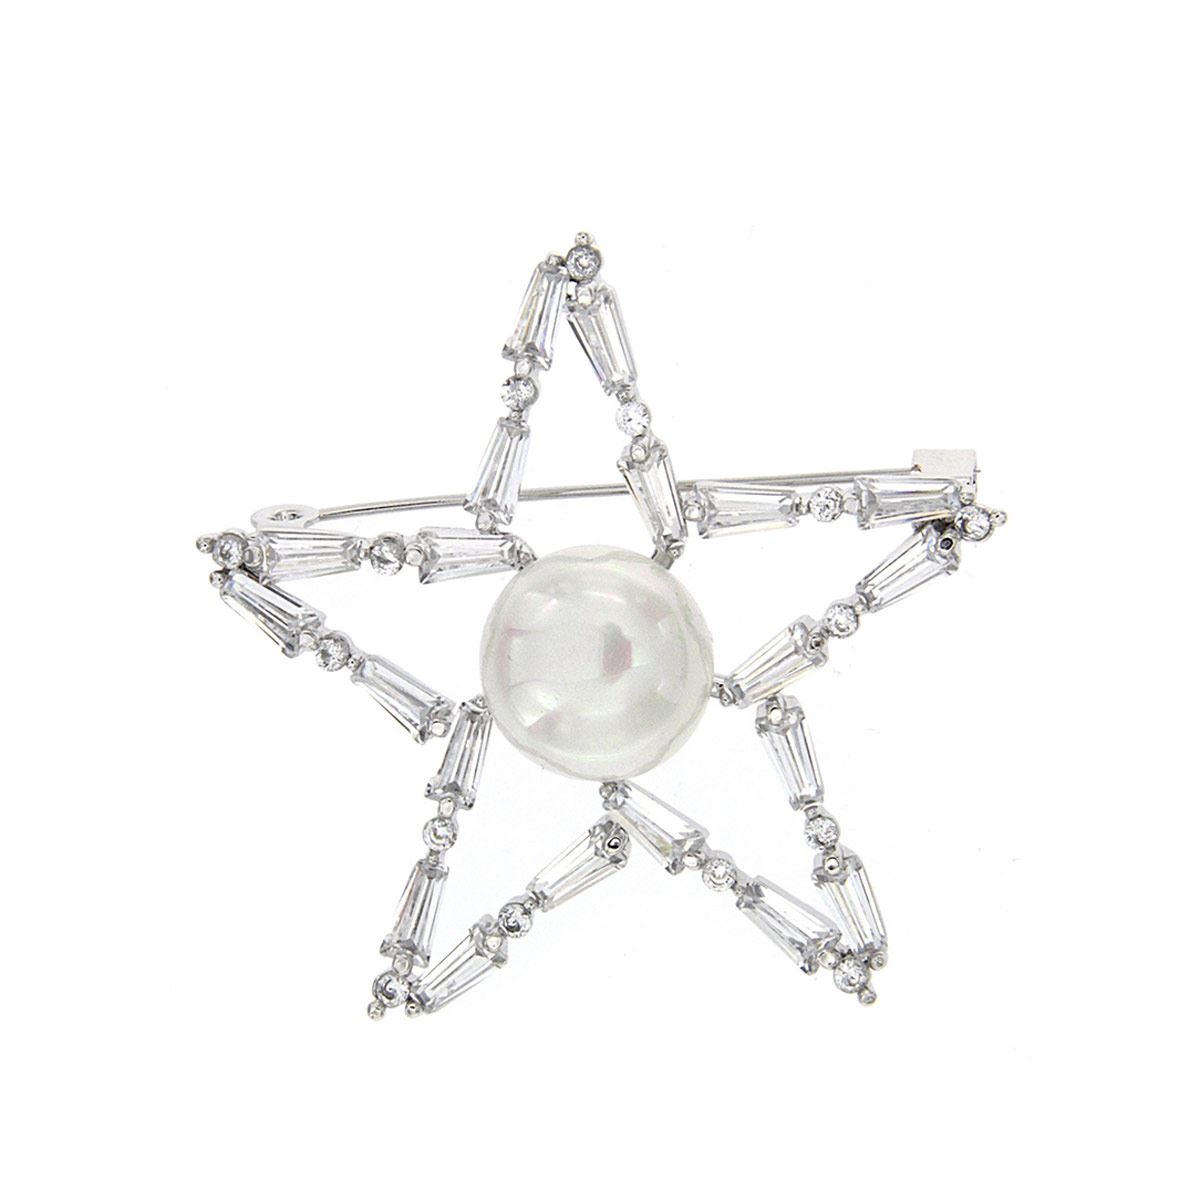 Broche estrella con circonita cristal y perla blanca, con acabado en rodio